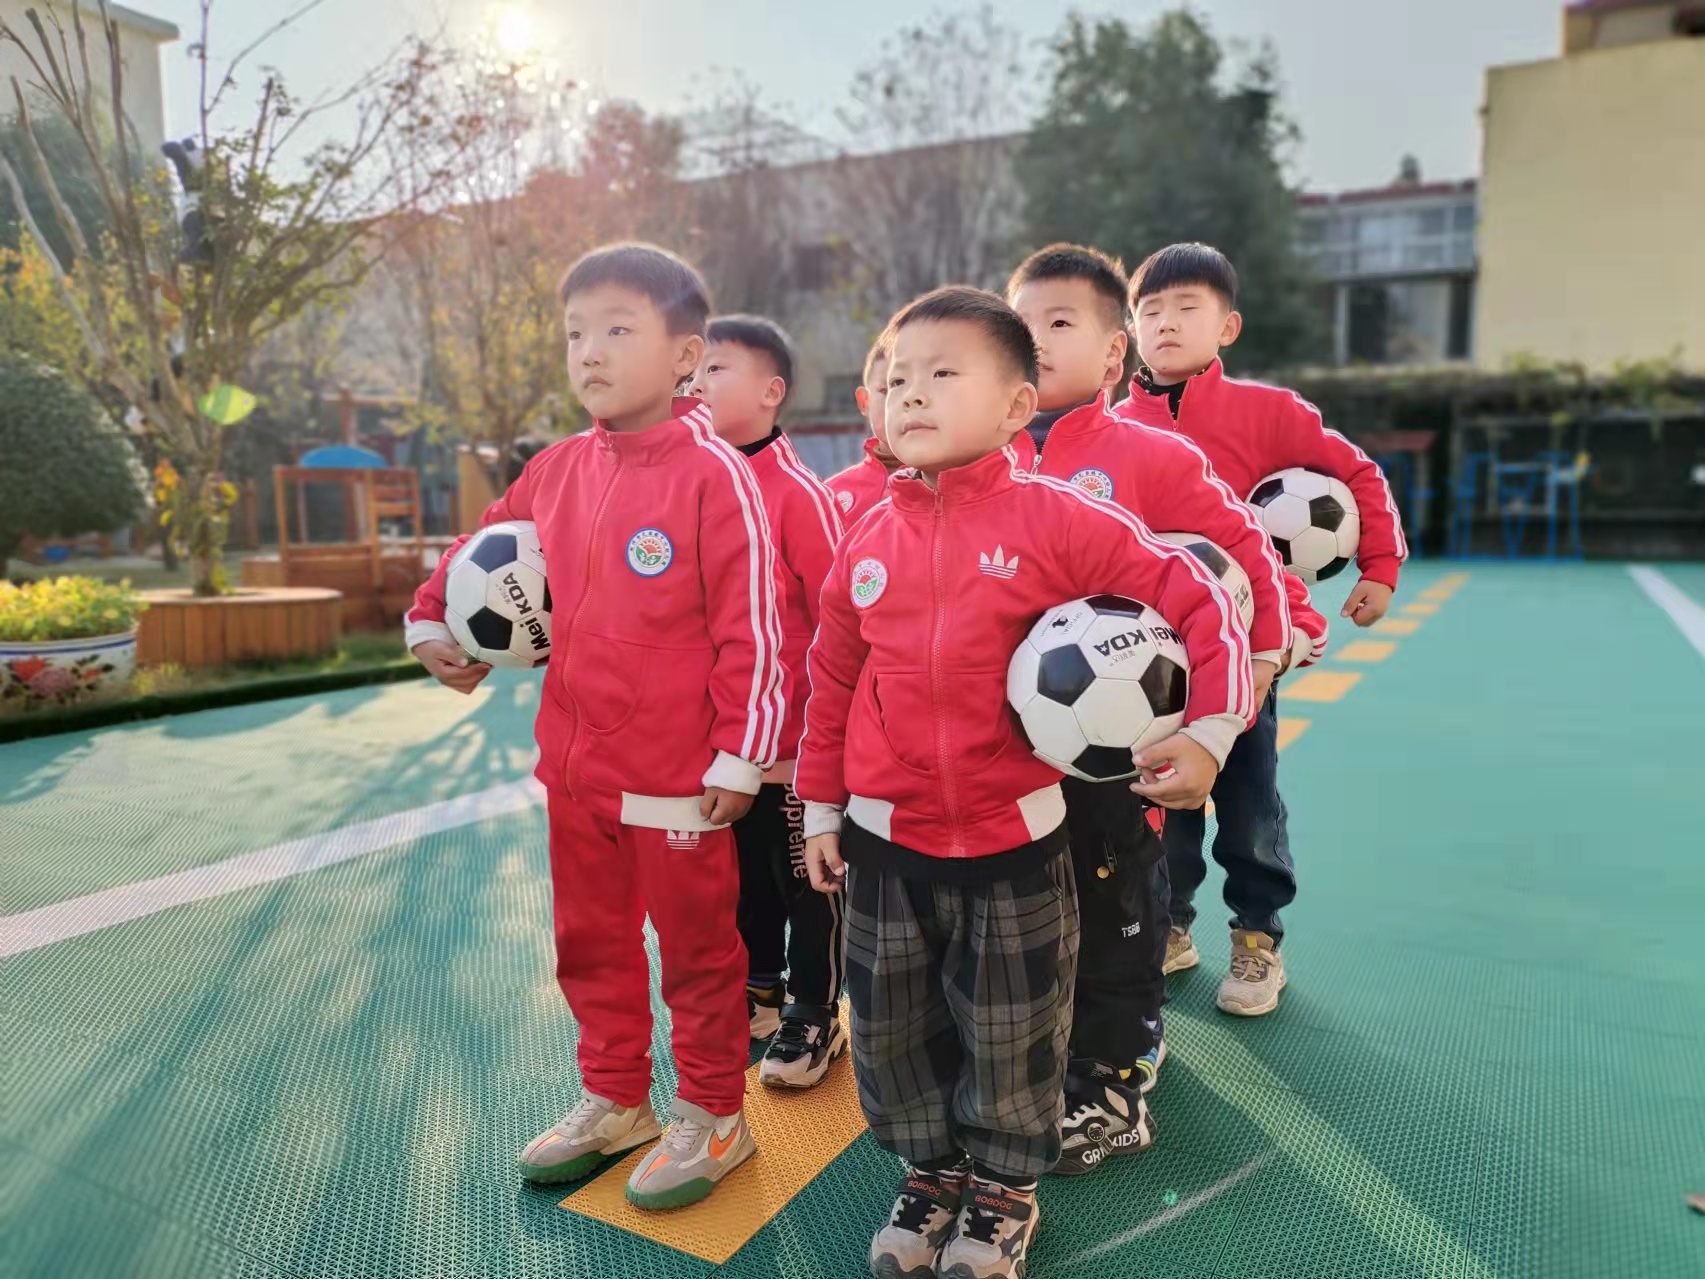 足球之路，我们一直在前行  ——瓦窑镇中心幼儿园“双减”背景下的特色课程